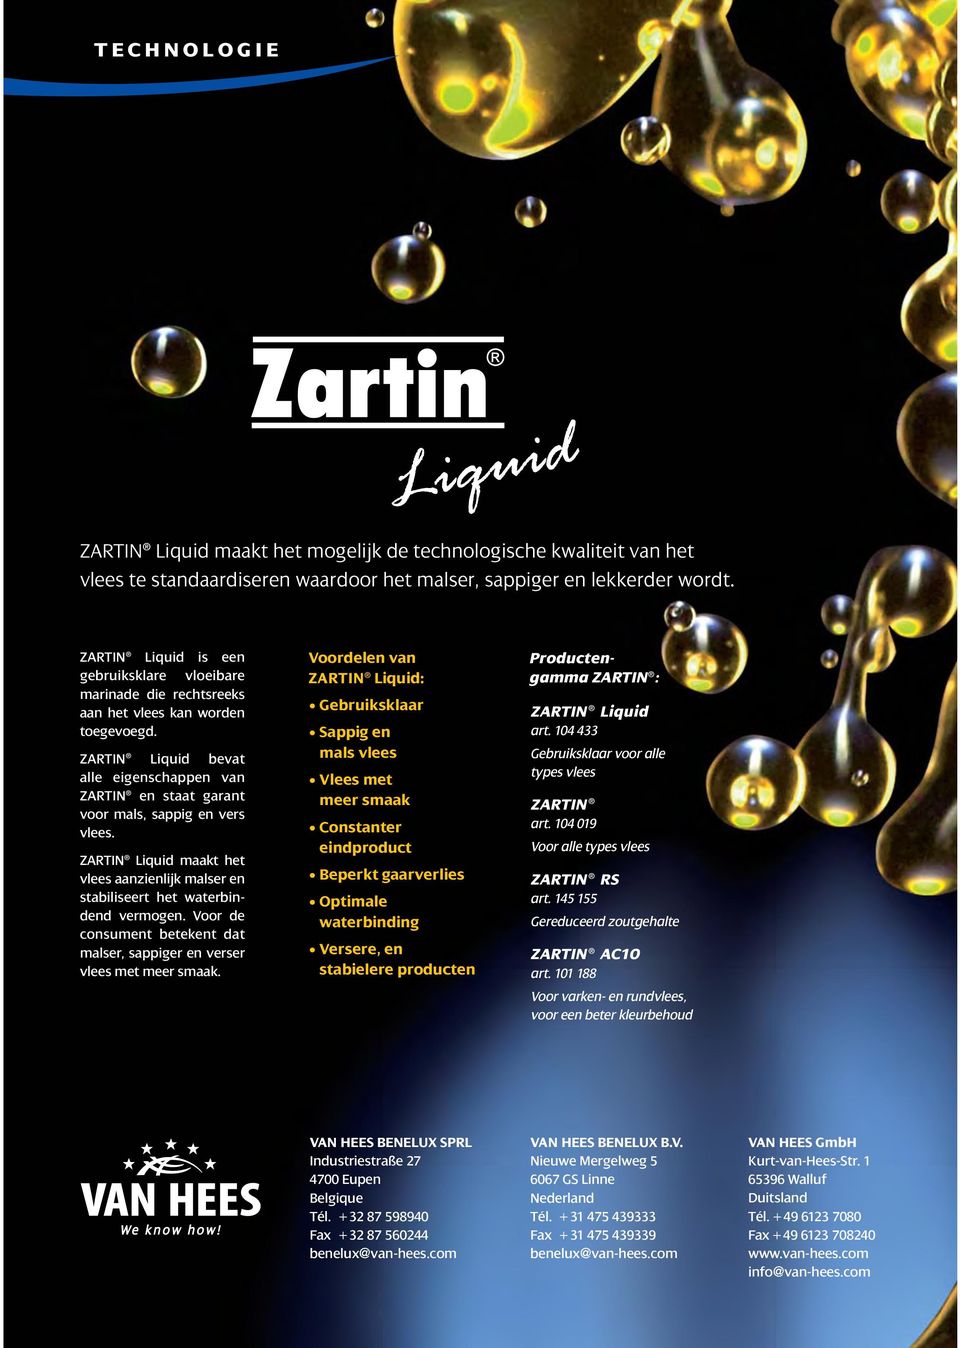 ZARTIN Liquid bevat alle eigenschappen van ZARTIN en staat garant voor mals, sappig en vers vlees. ZARTIN Liquid maakt het vlees aanzienlijk malser en stabiliseert het waterbindend vermogen.